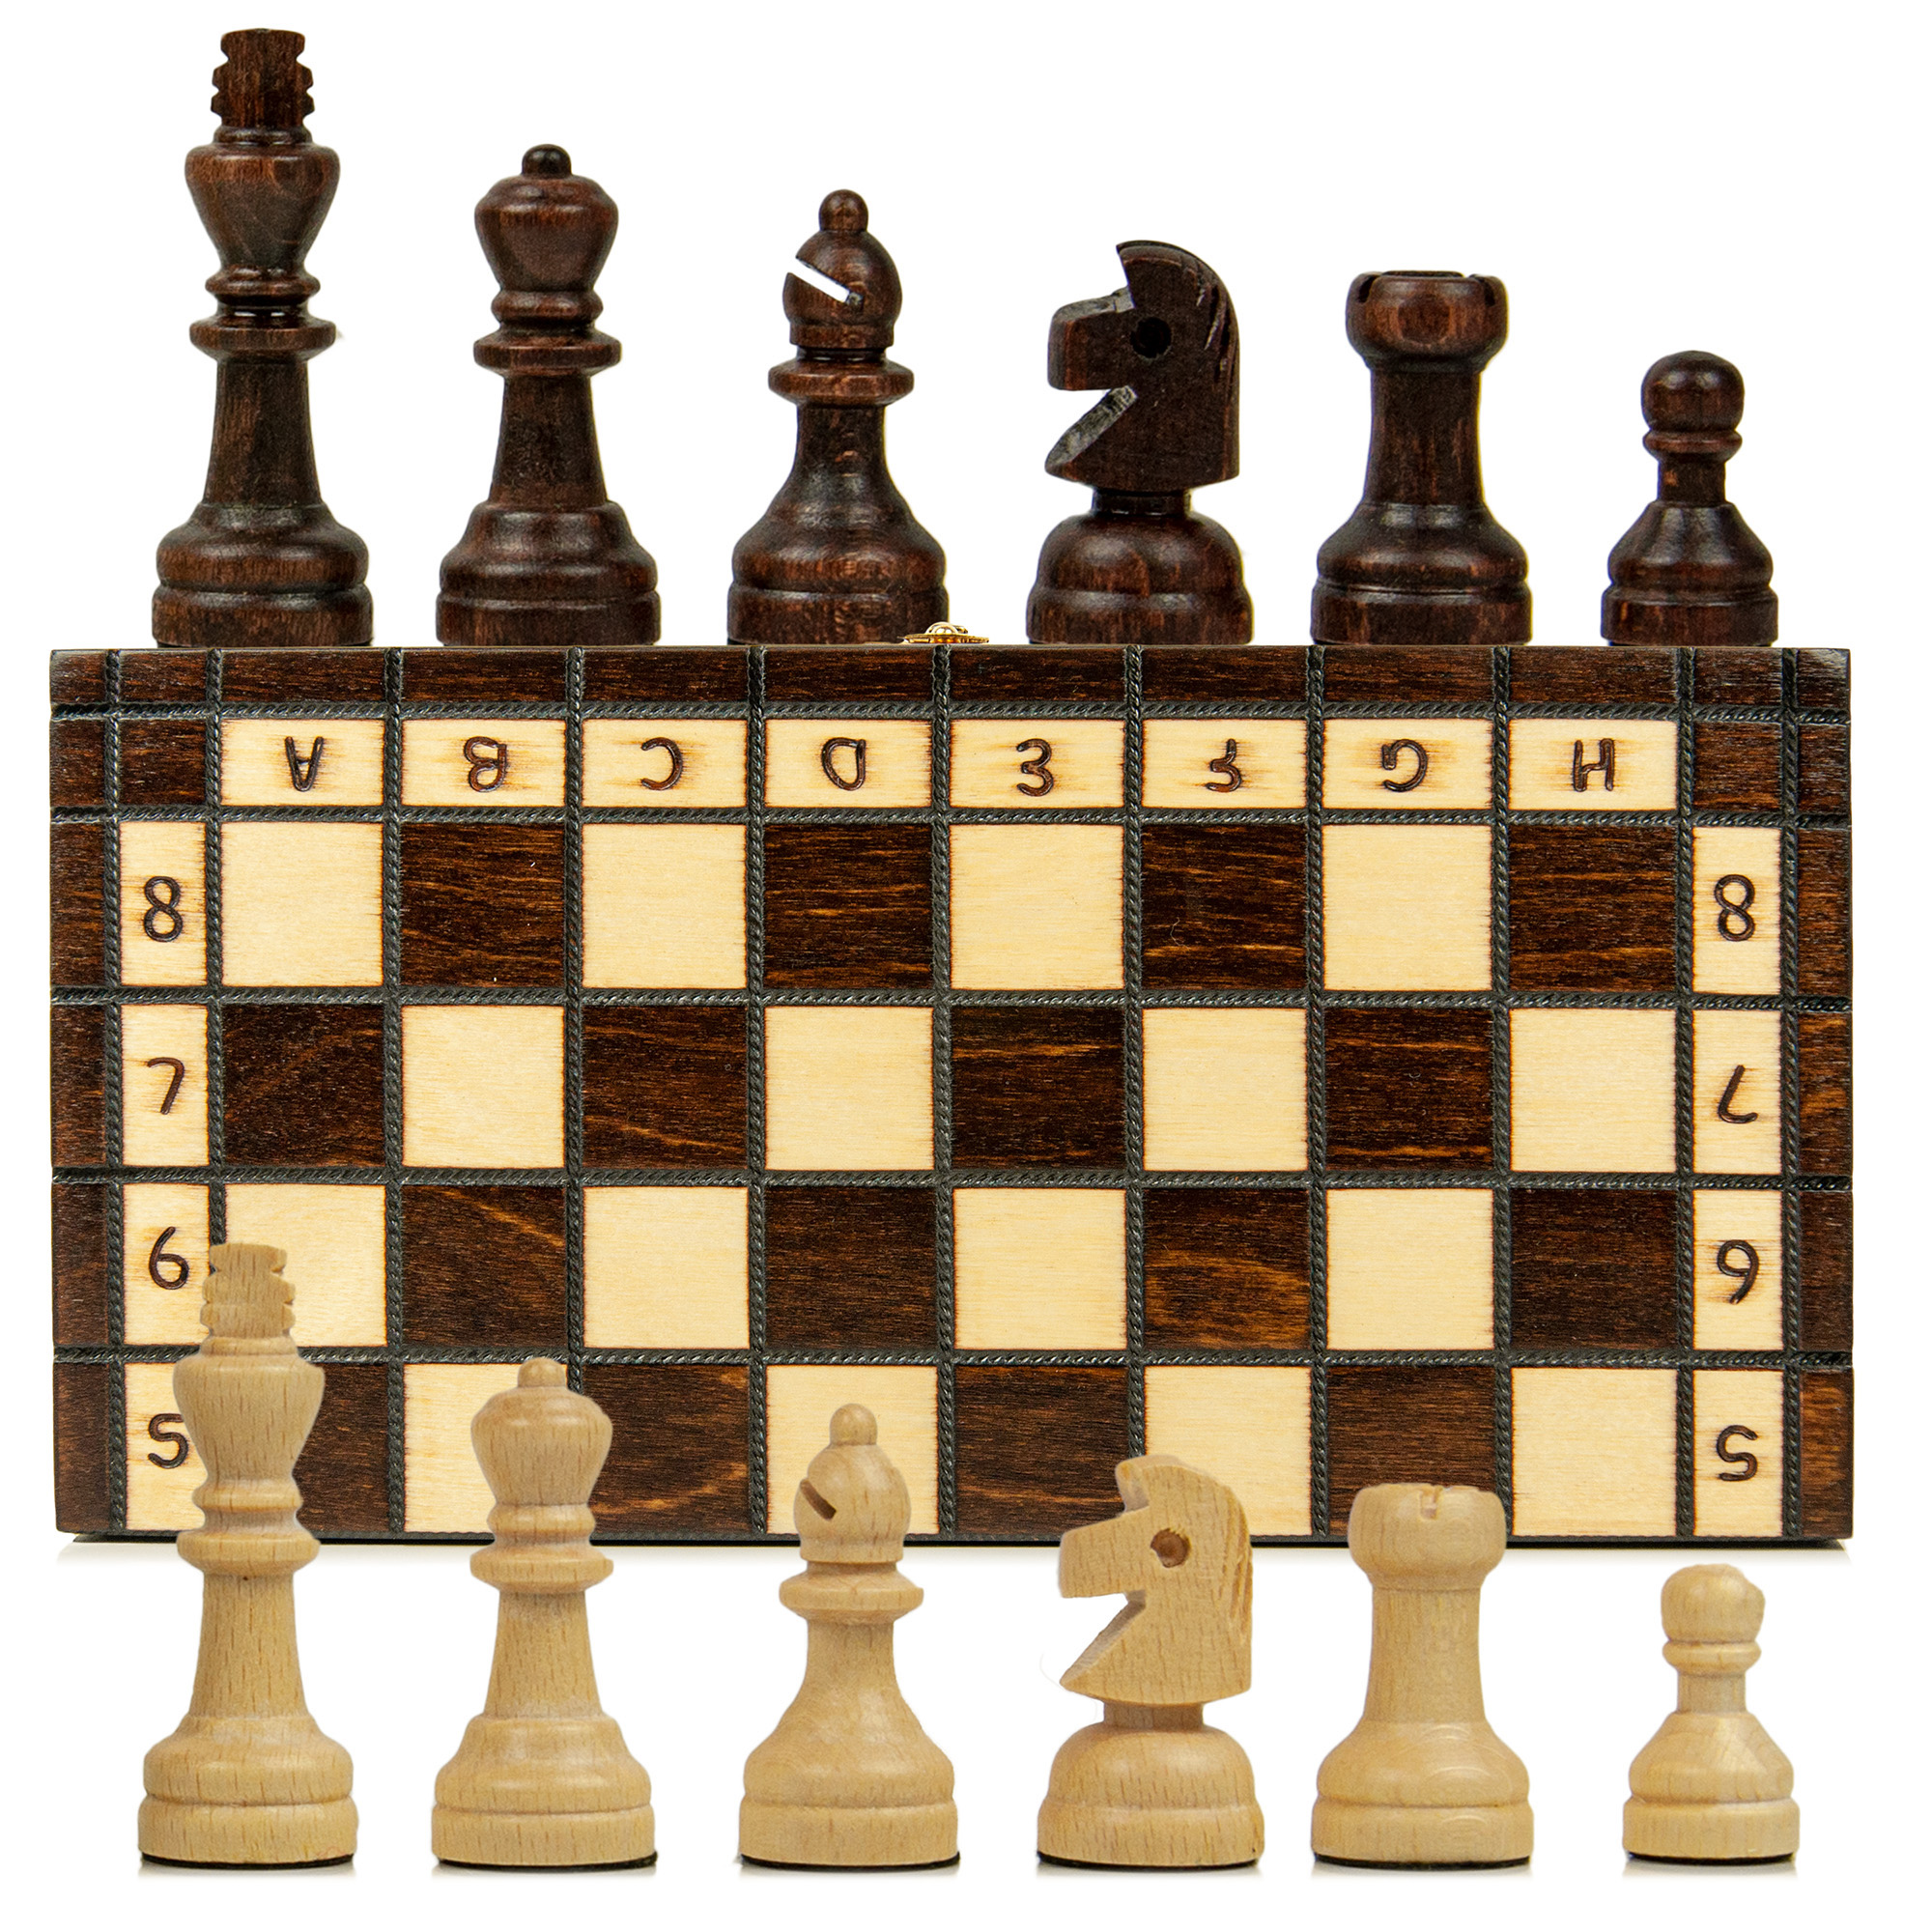 Schachspiel im Beutel